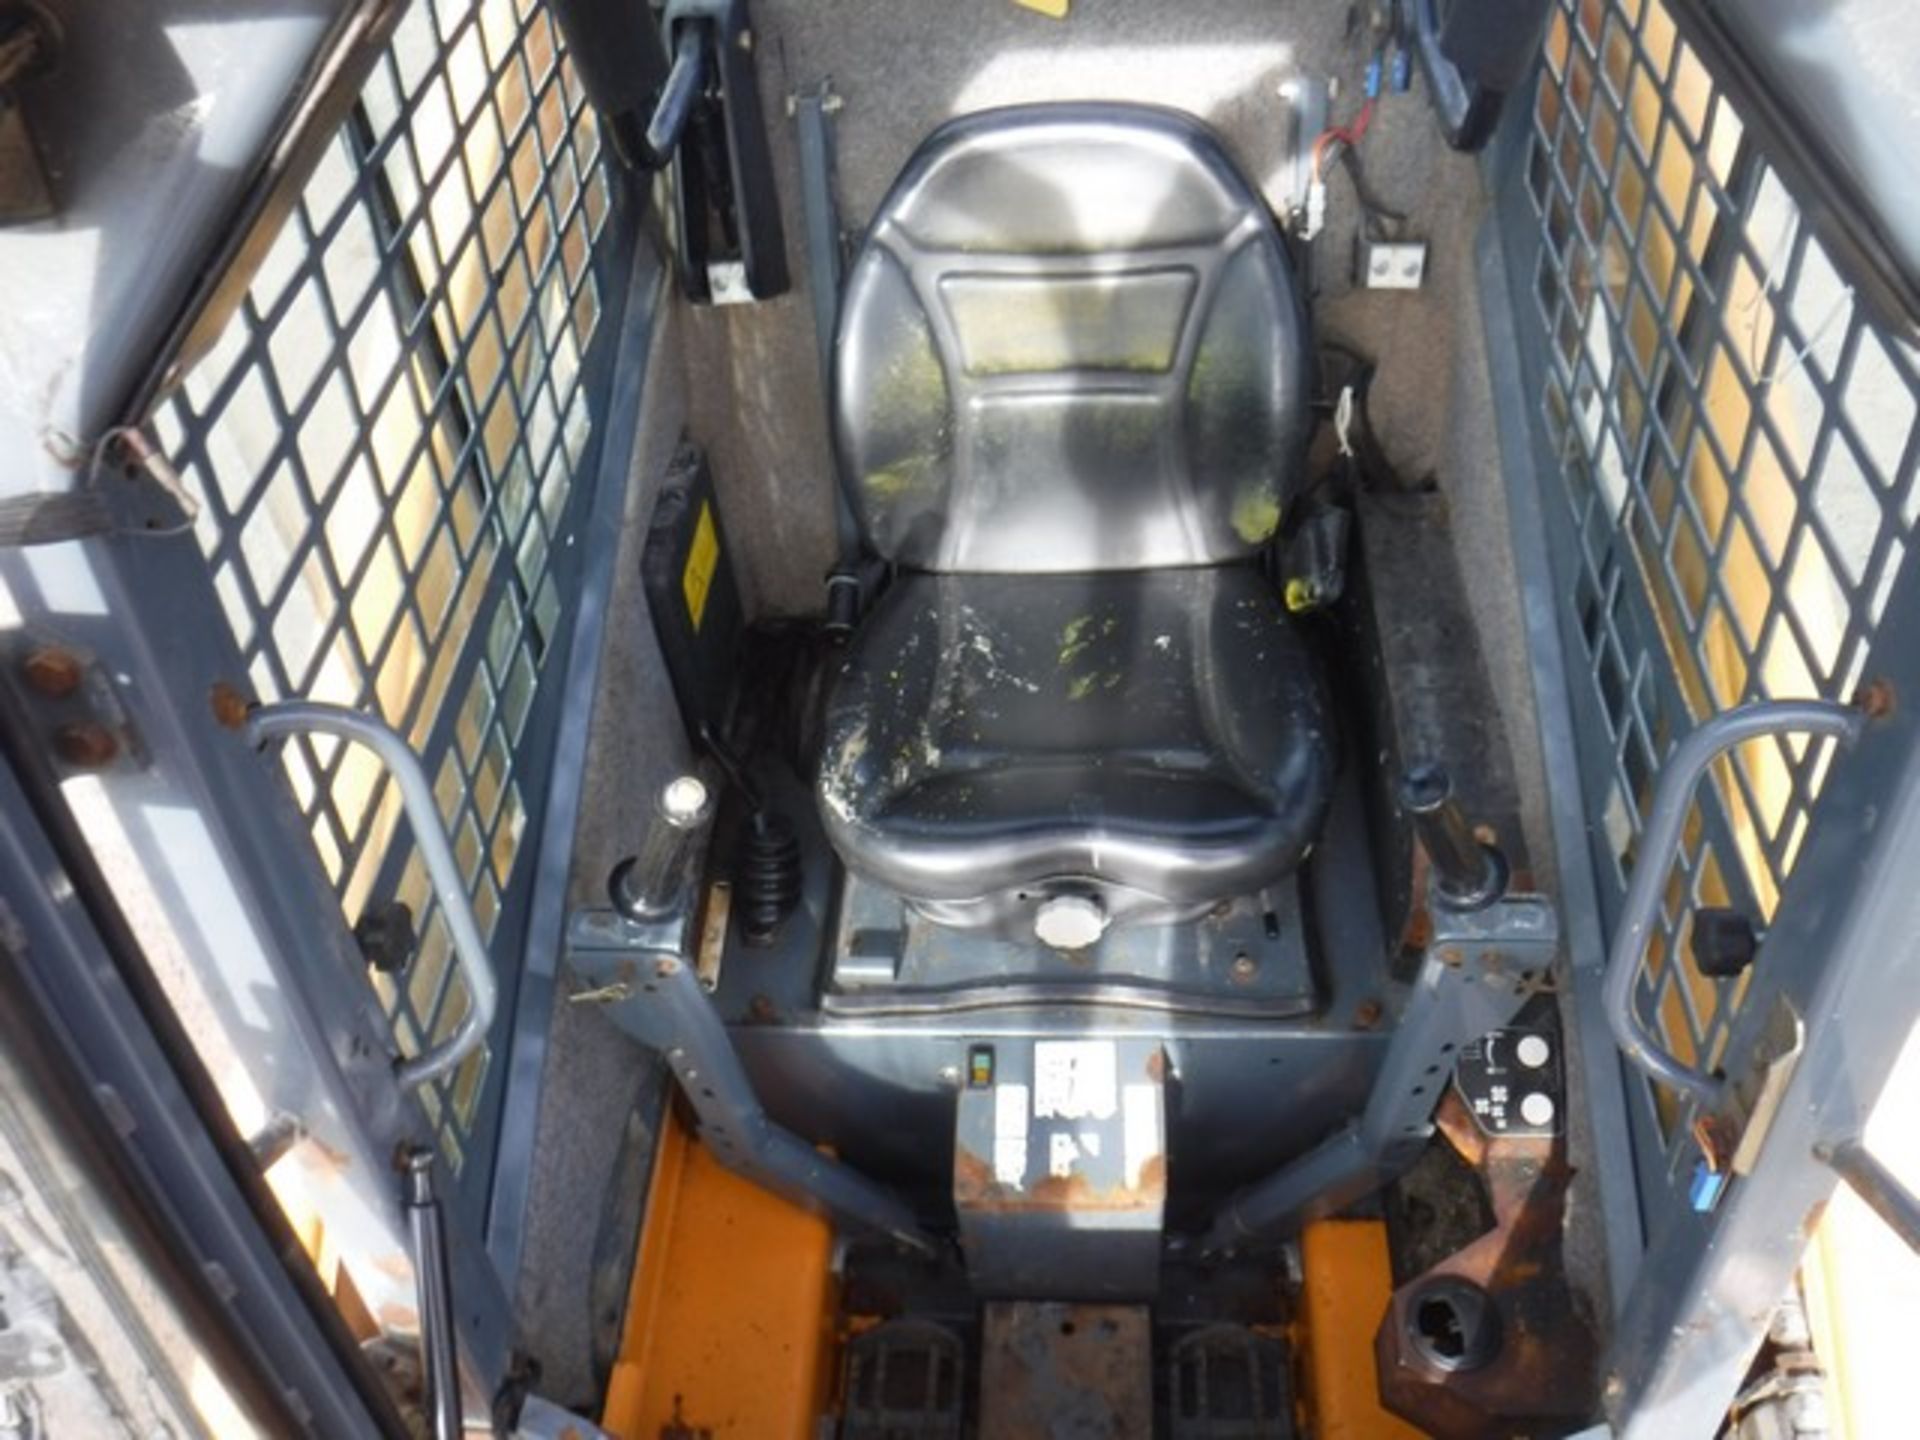 2014 Mustang 2054 skid steer loader c/w door kit, solid wheels, hi-flo hydraulics, rear co - Image 7 of 8